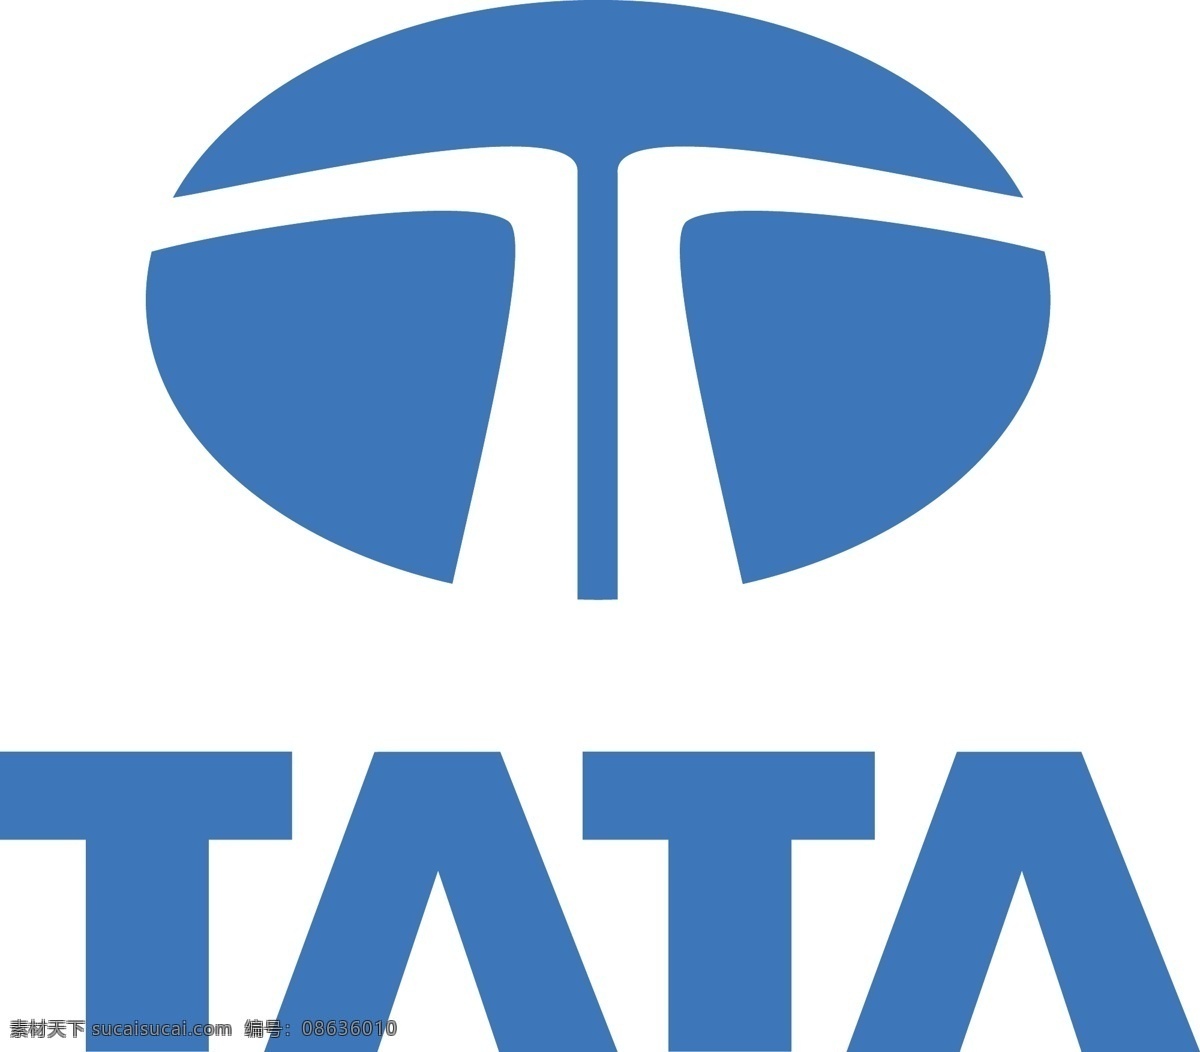 tata logo大全 logo 设计欣赏 商业矢量 矢量下载 工厂 企业 标志设计 欣赏 网页矢量 矢量图 其他矢量图